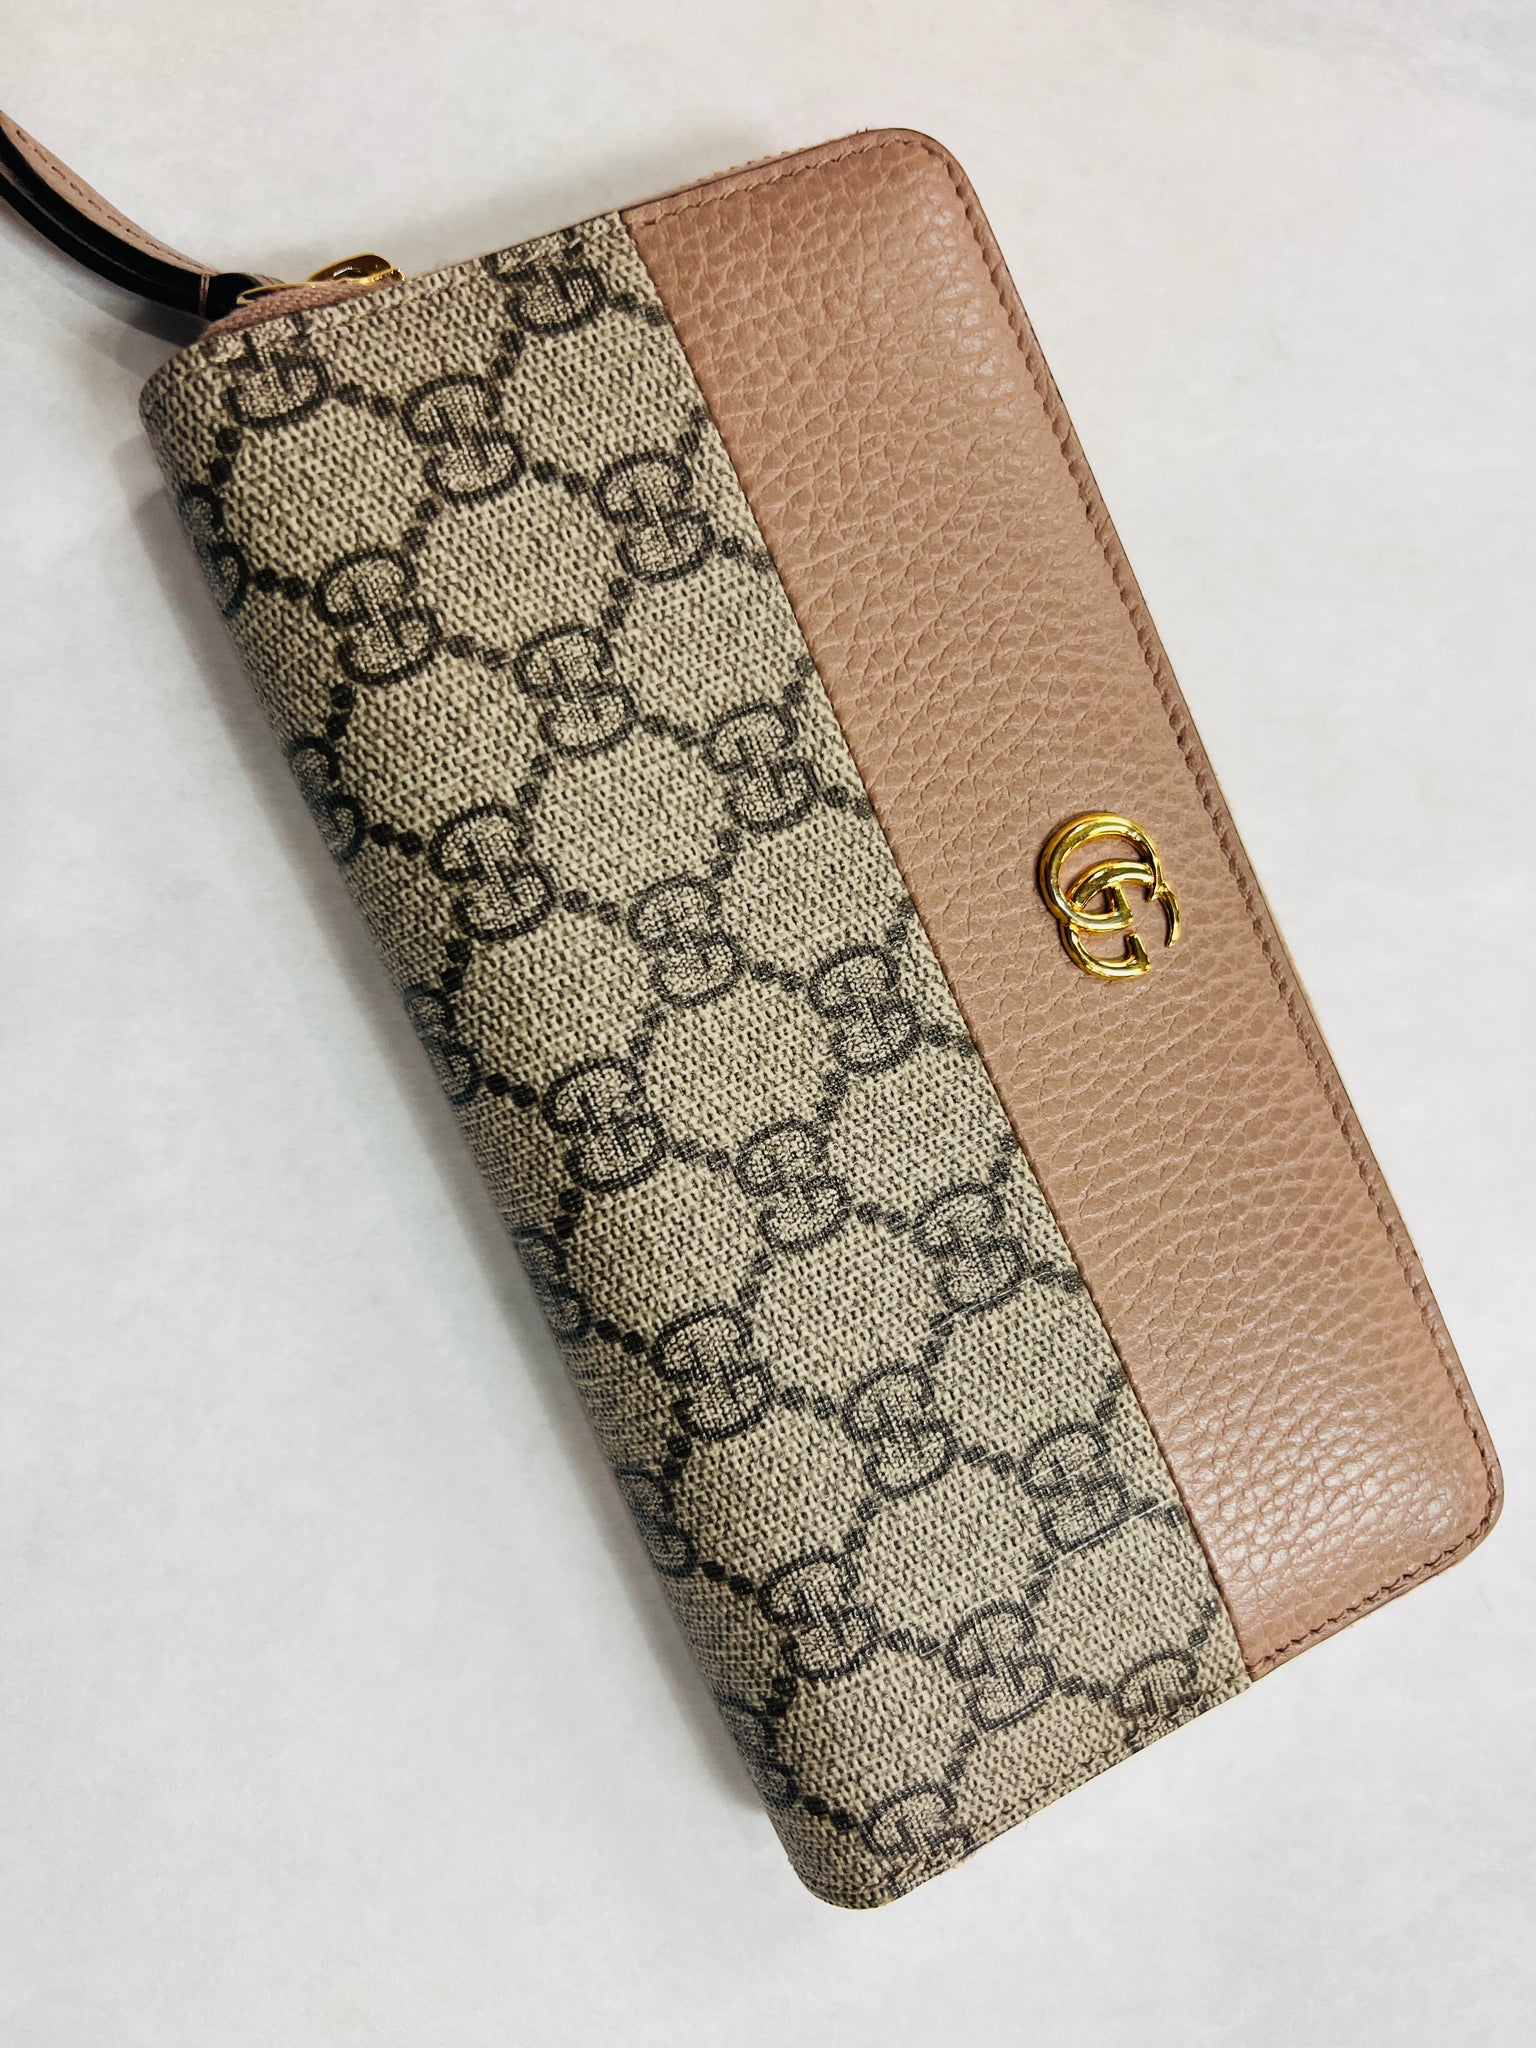 Gucci GG Marmont Zip-Around Wallet - Neutrals